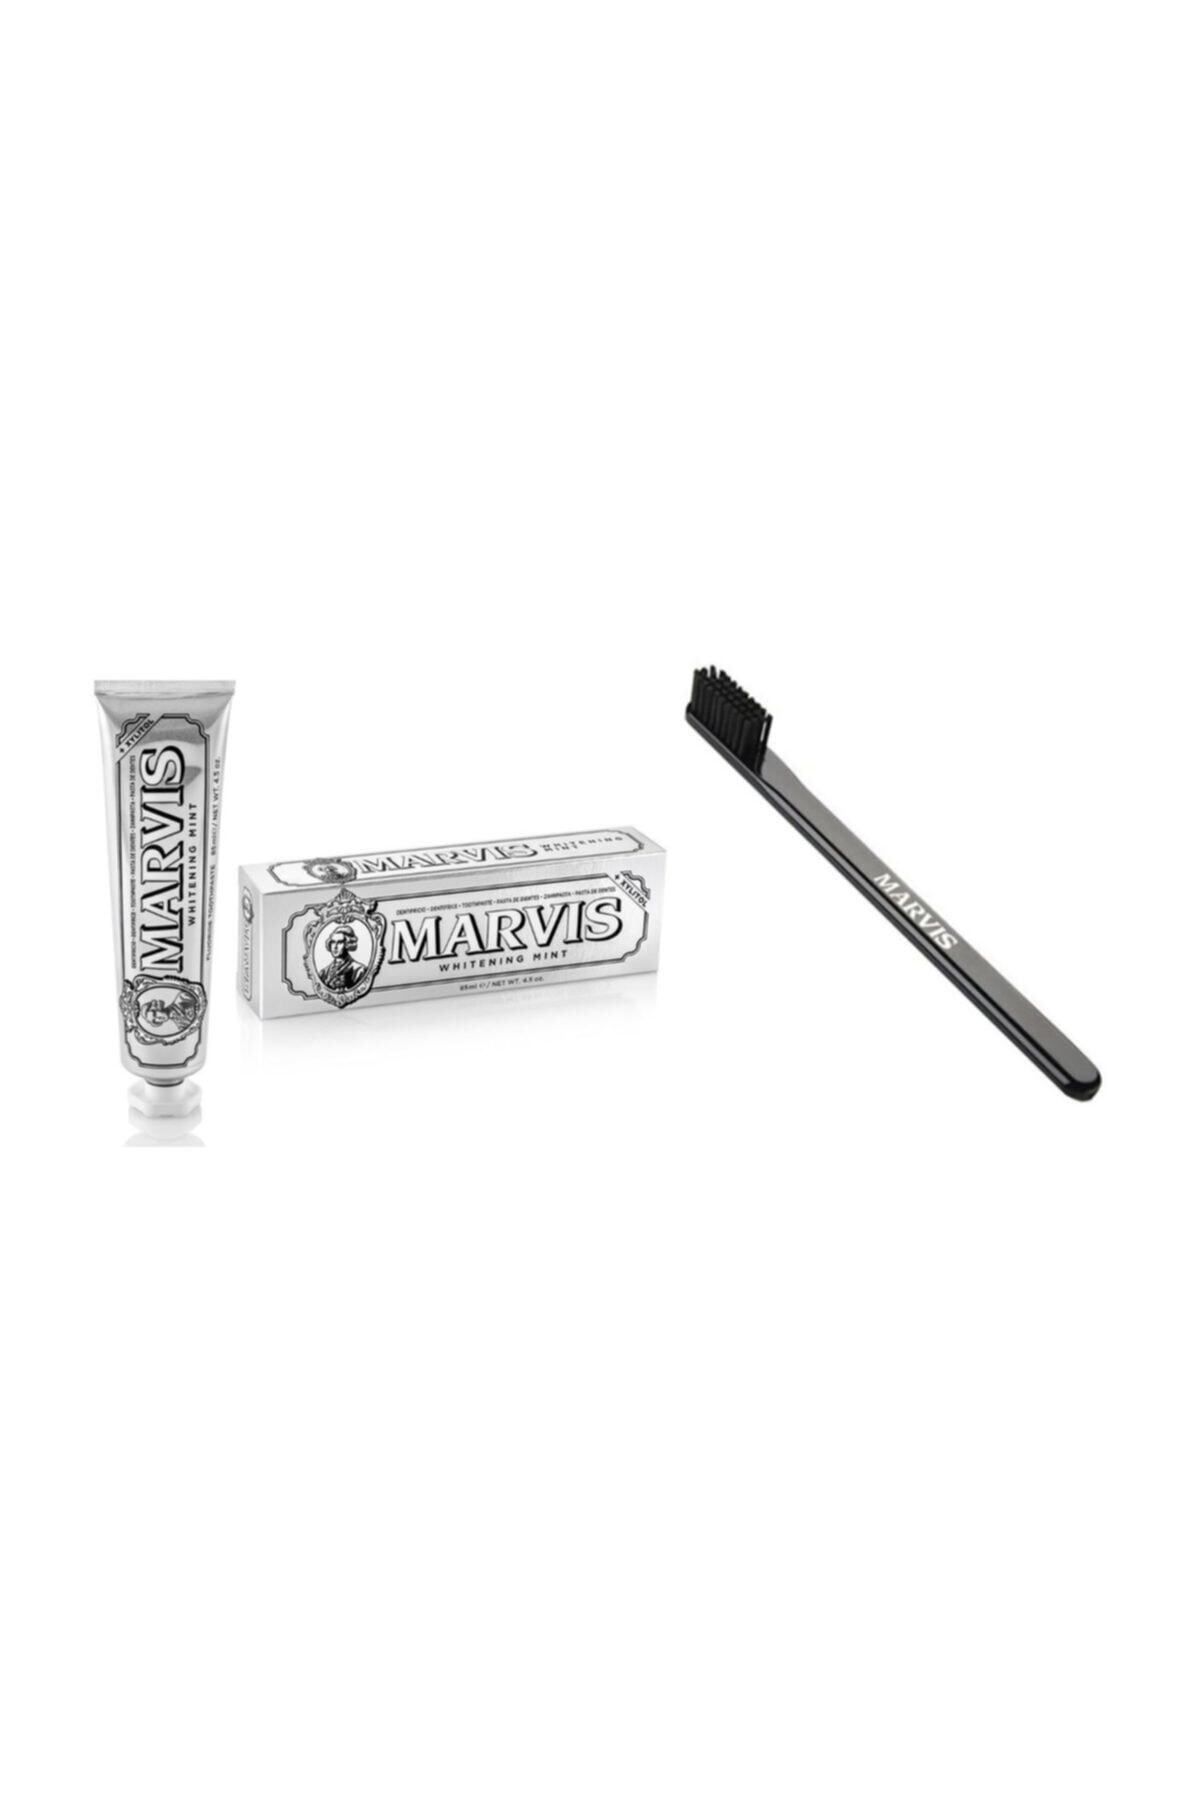 Marvis Whitening Mint Beyazlatıcı Diş Macunu 85 ml Ve Black Mediım Orta Sert Diş Fırçası